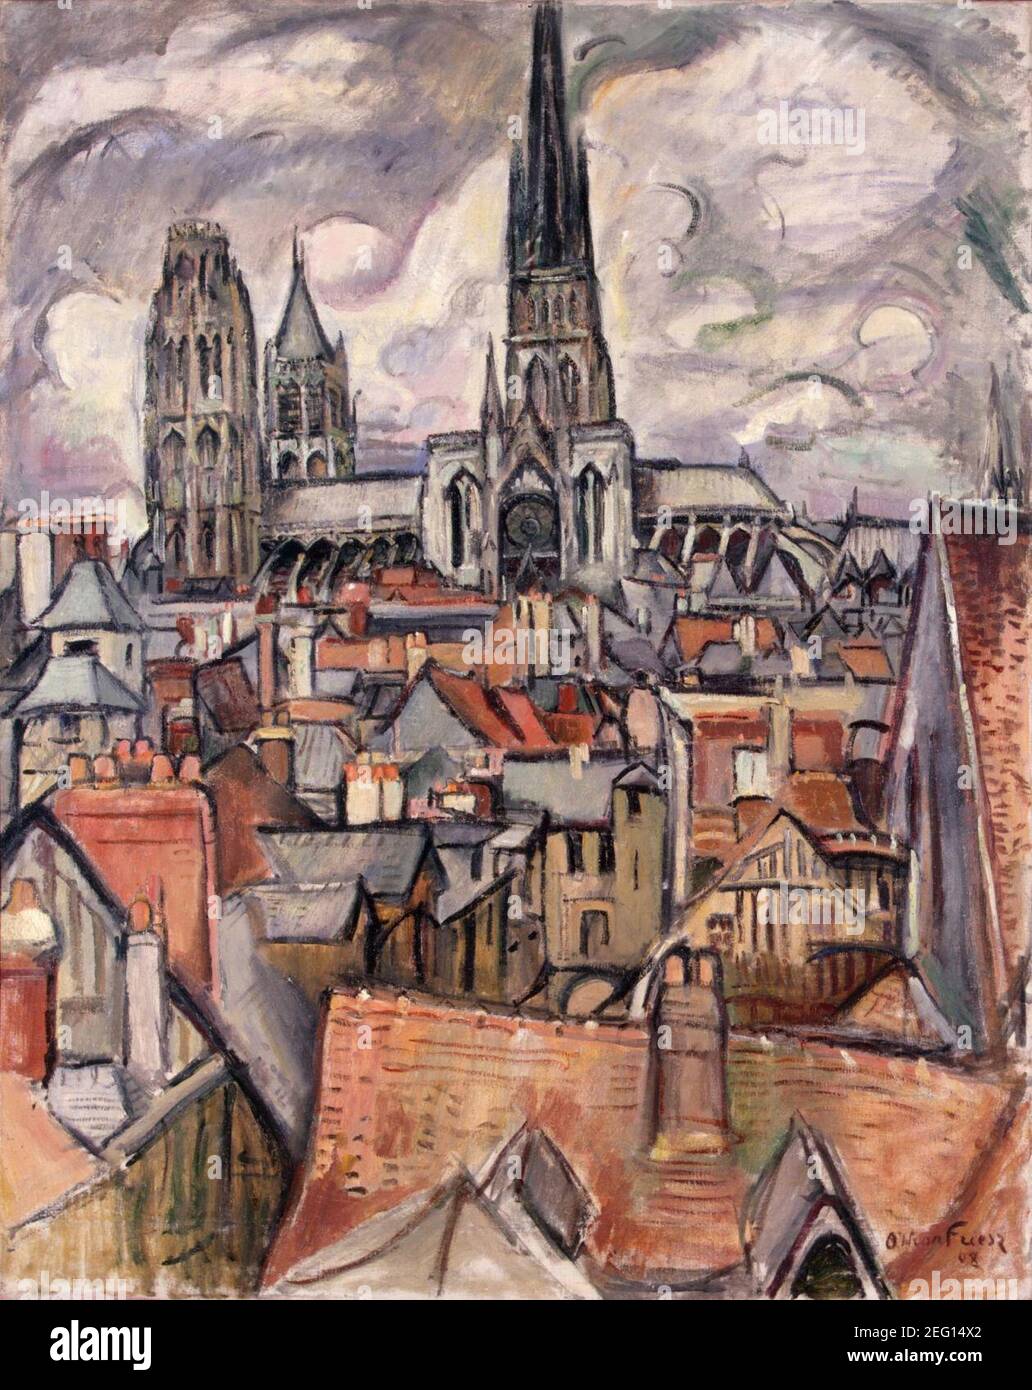 Othon Friesz - Dächer und Kathedrale in Rouen - Hermitage. Stockfoto